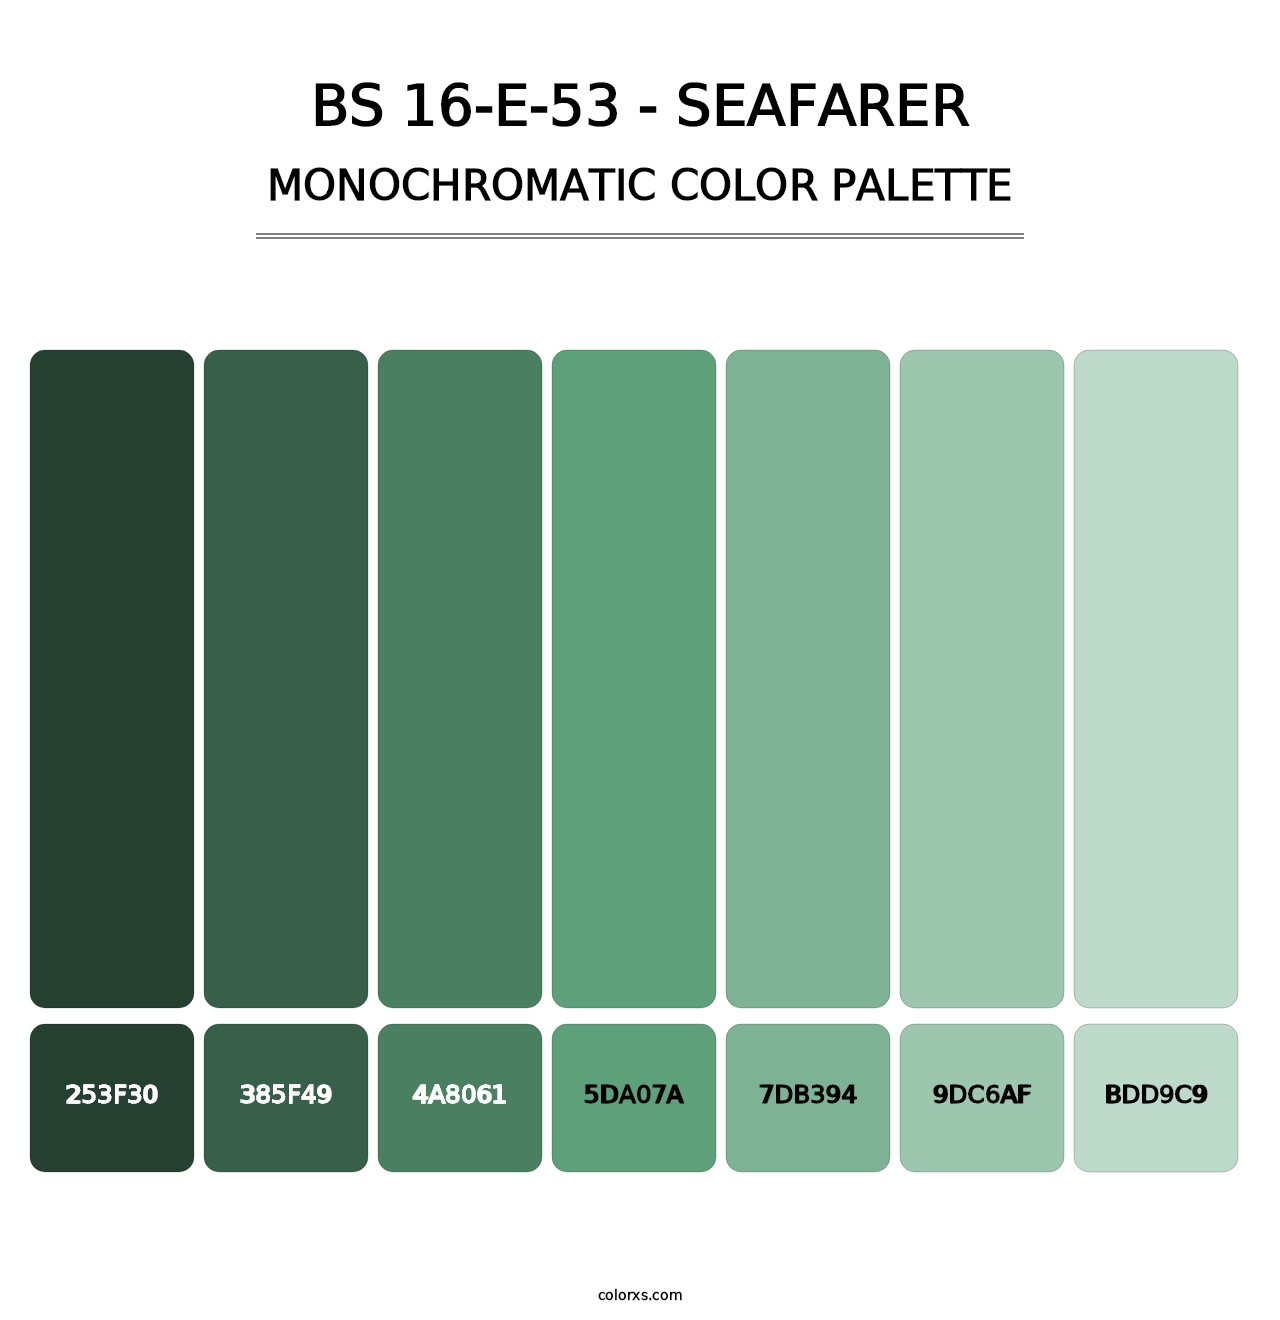 BS 16-E-53 - Seafarer - Monochromatic Color Palette